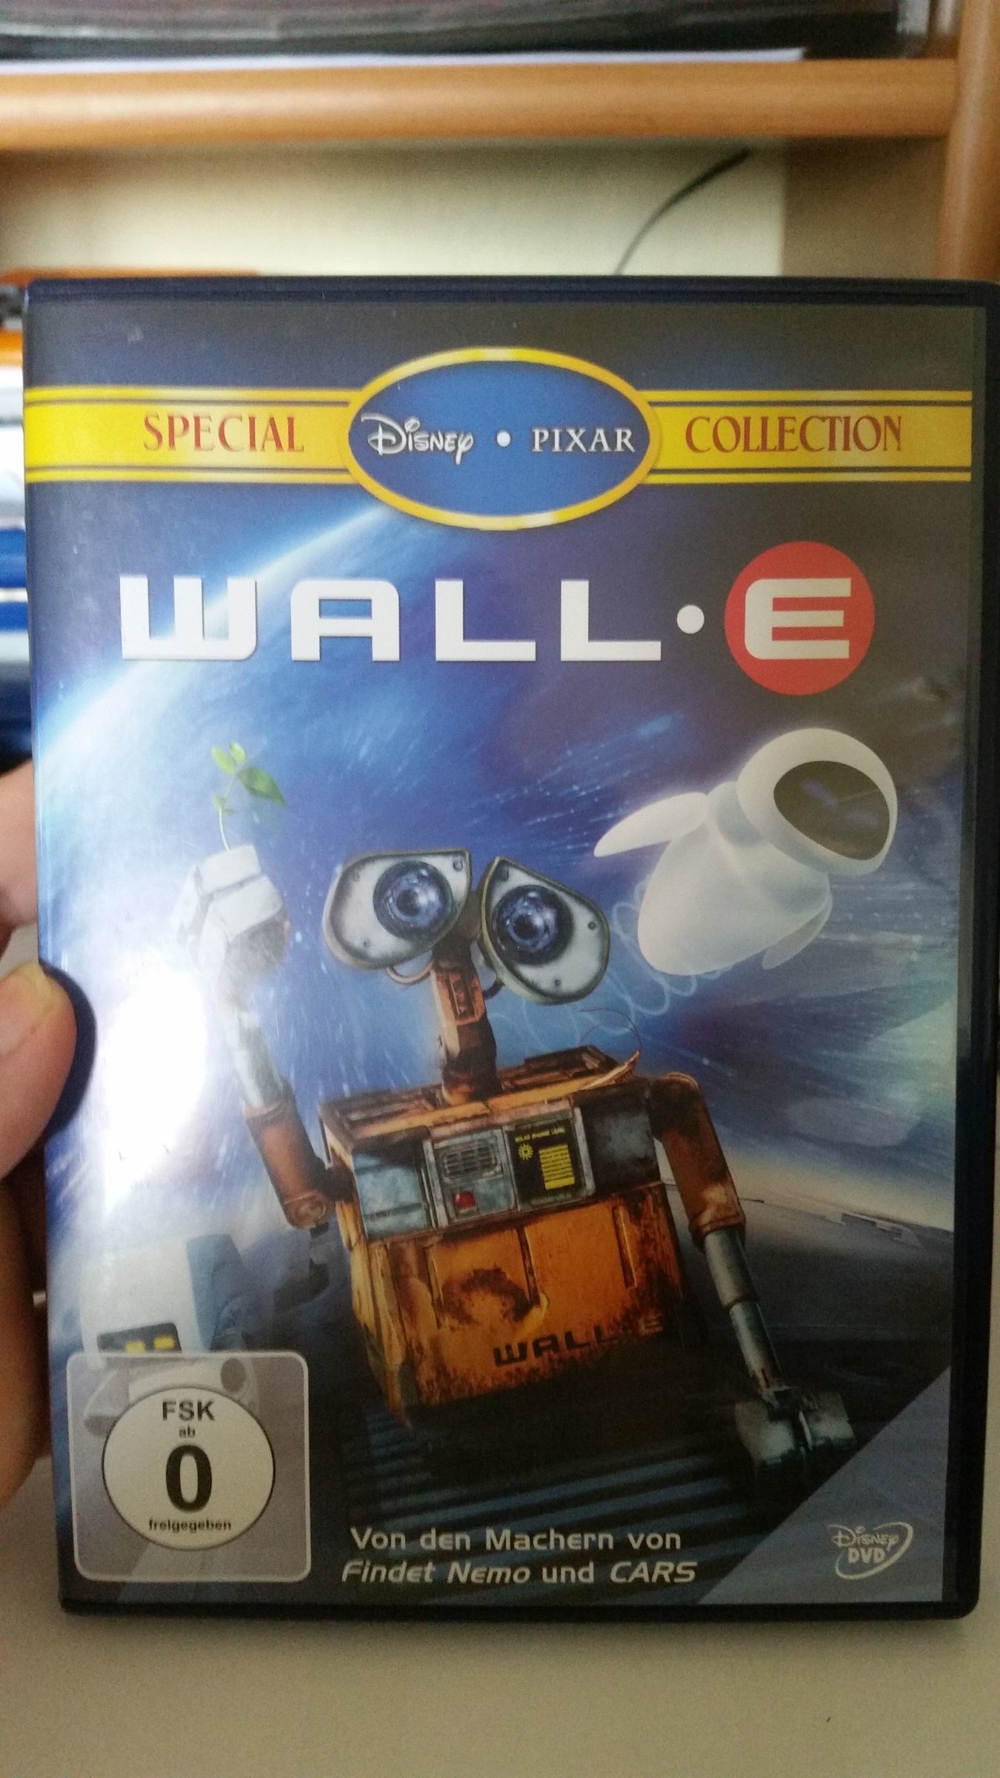 DVD: Wall e